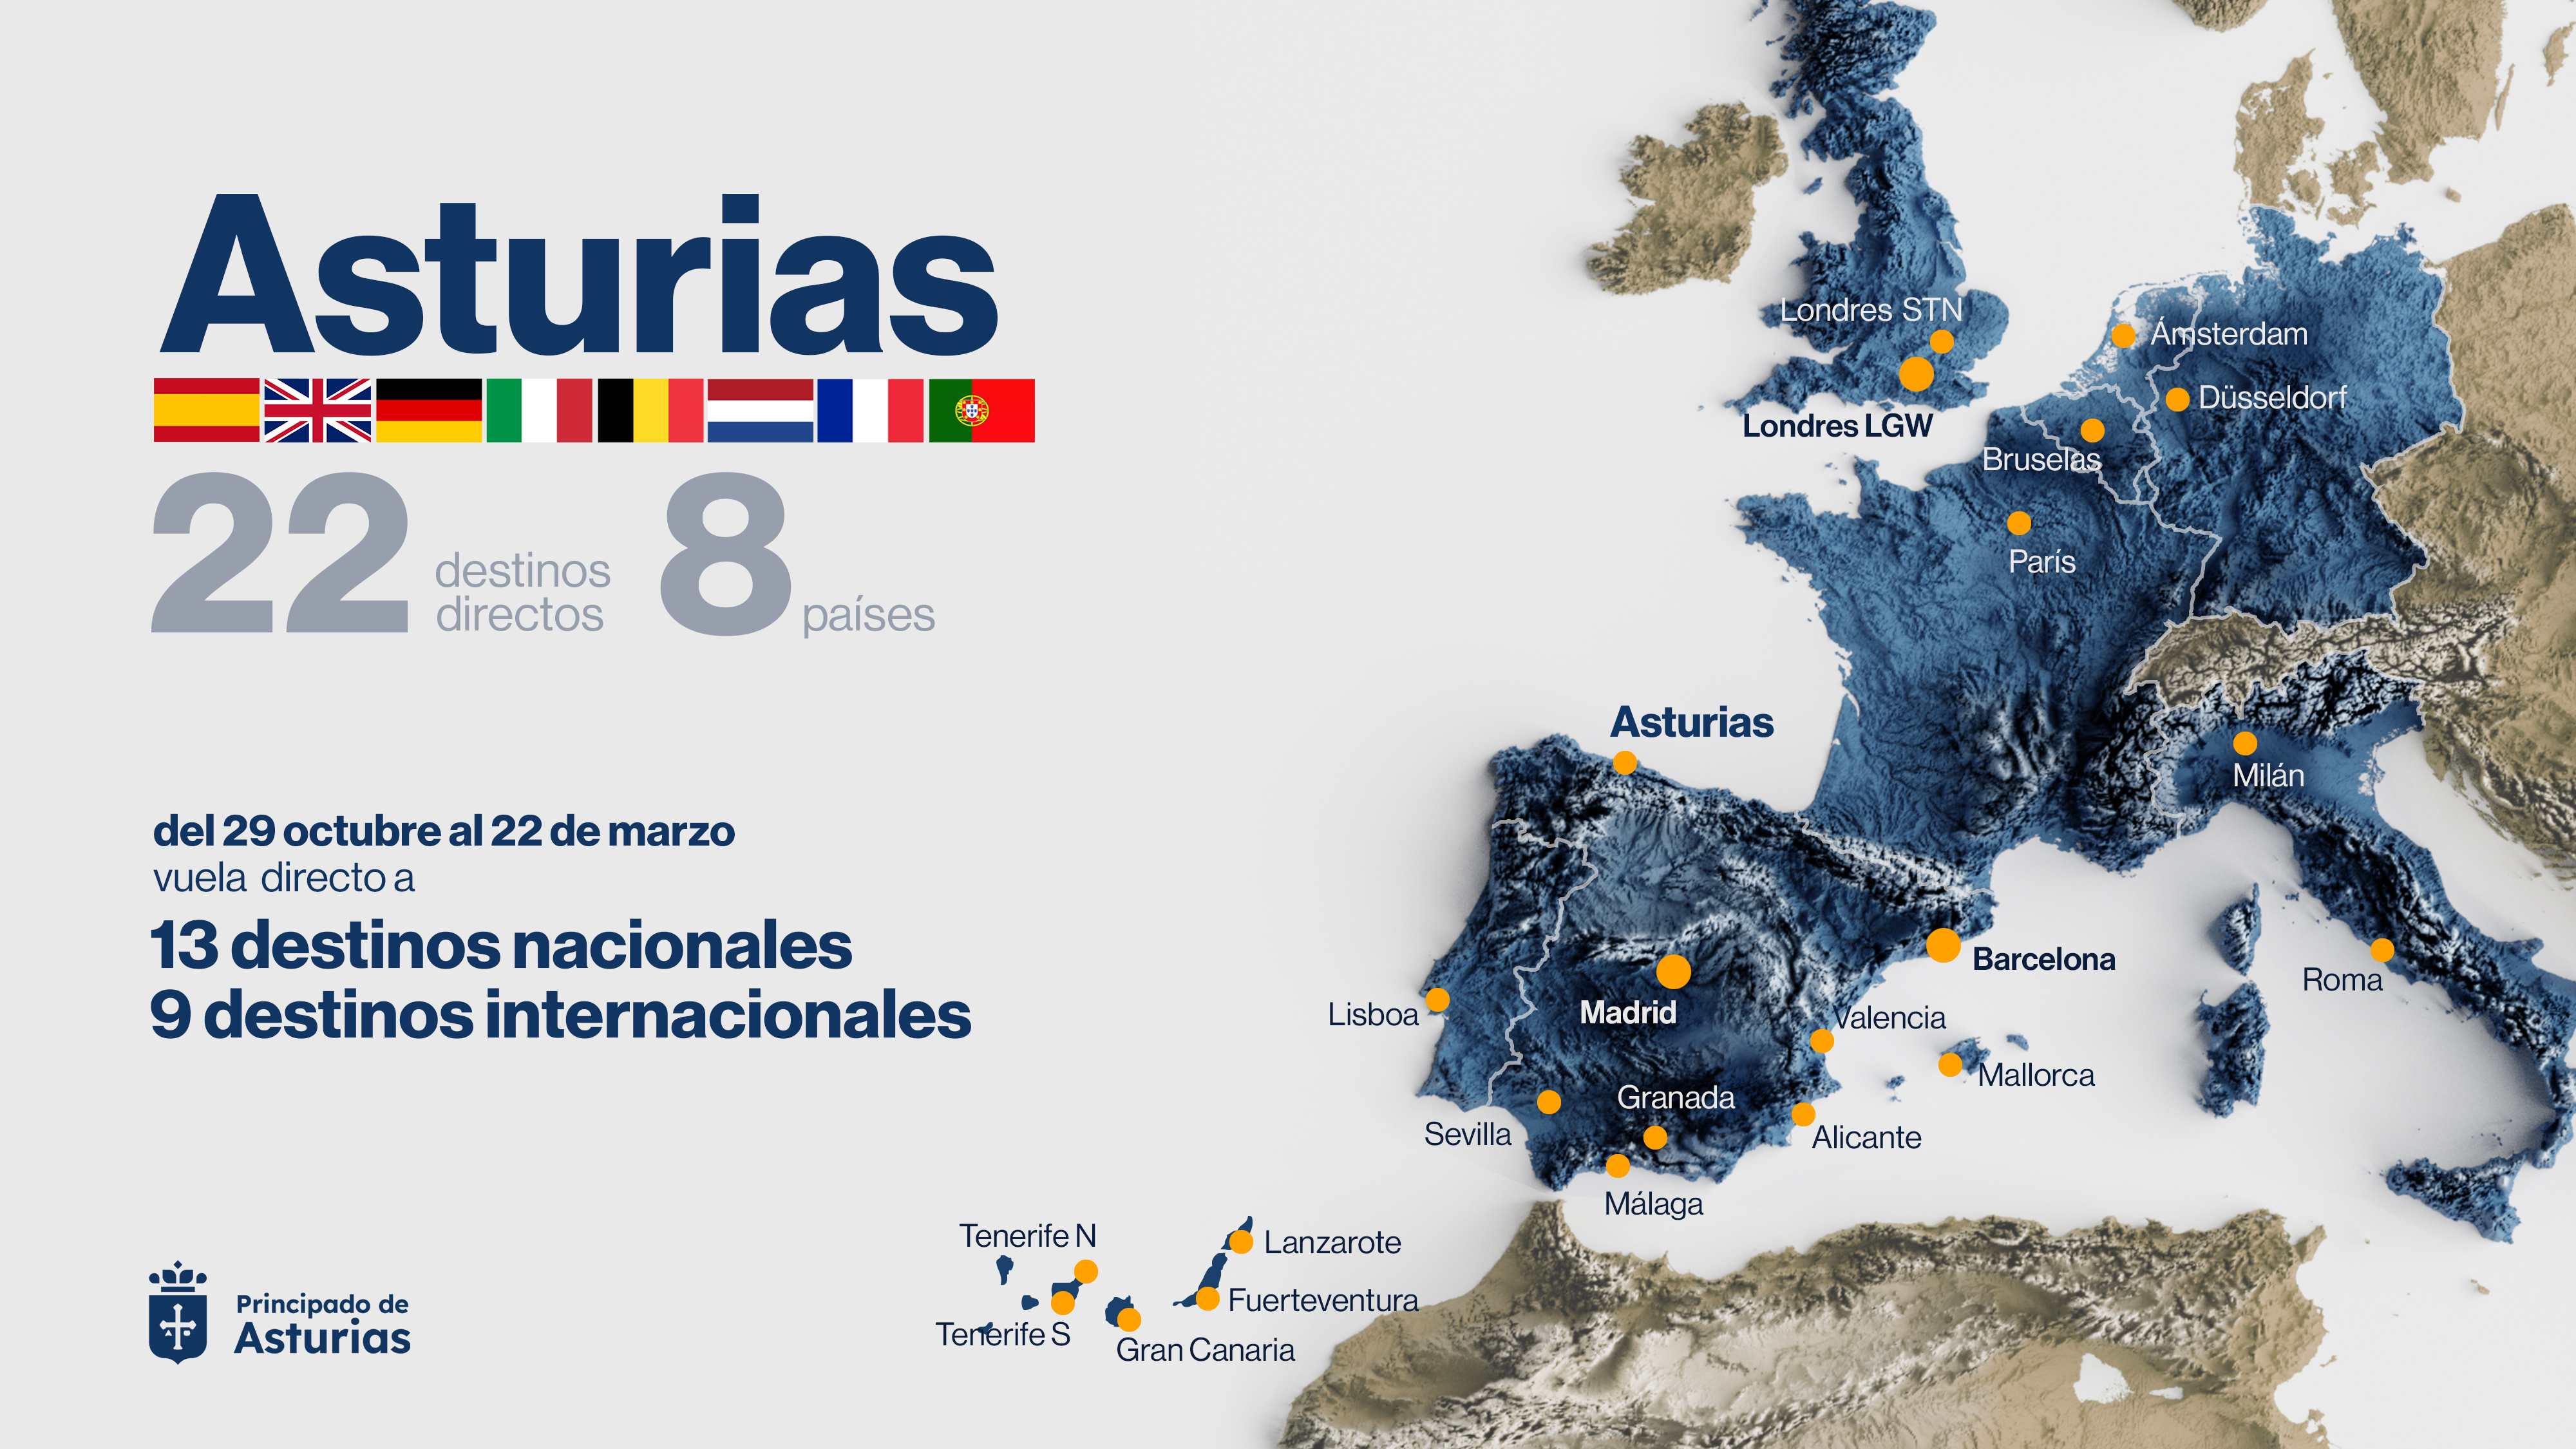 Imagen del artículo Asturias inicia la mejor temporada de vuelos de invierno de su historia con 22 destinos directos a ocho países